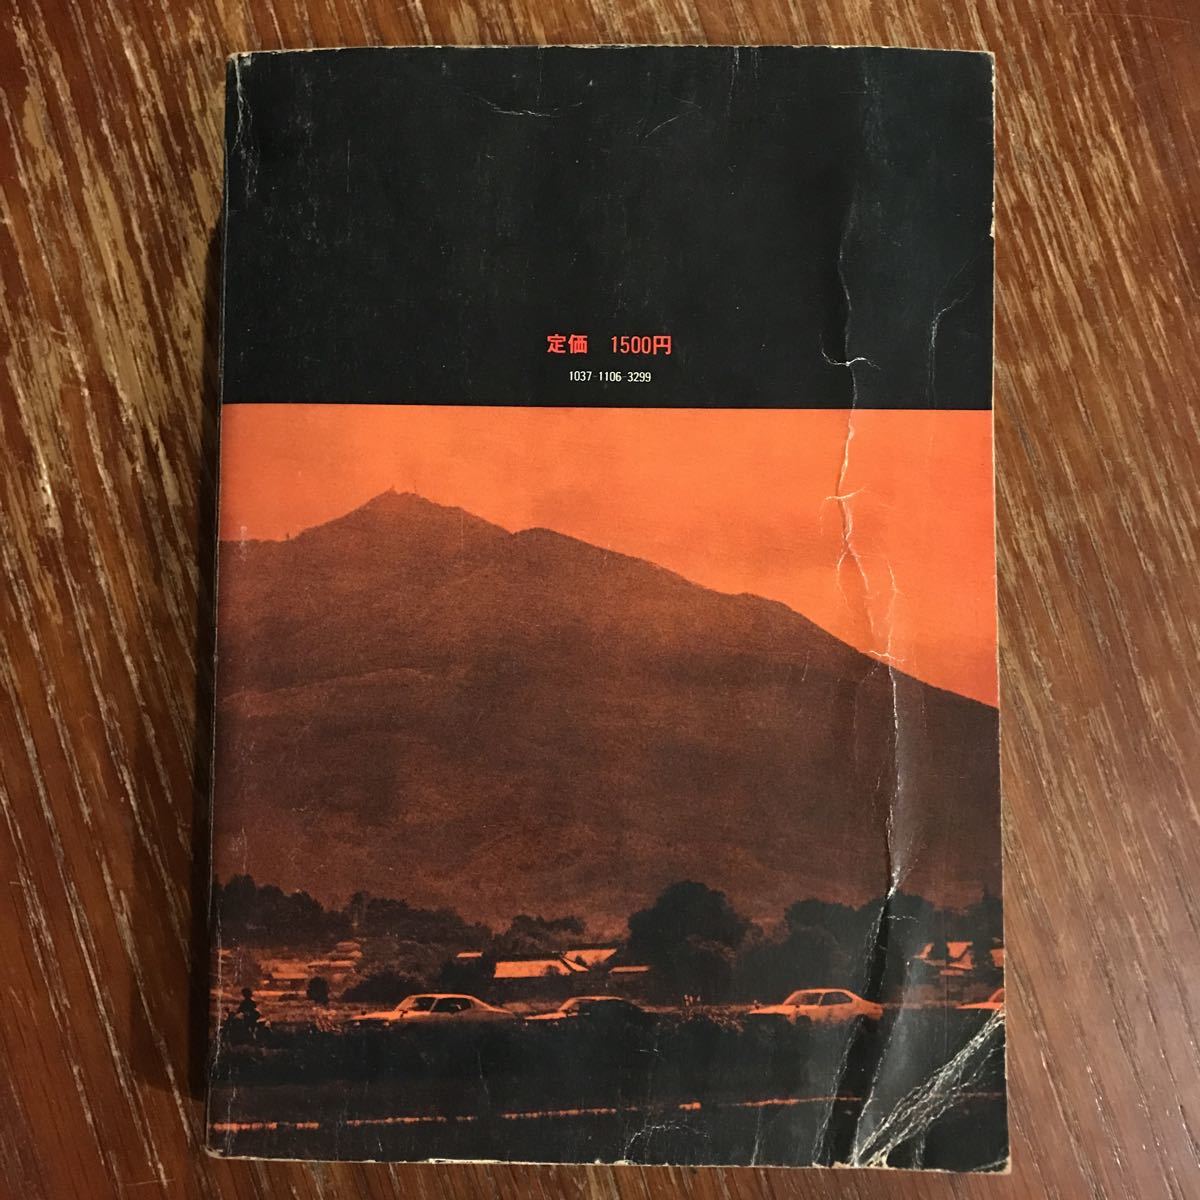 「暴走列島80 全日本暴走族グラフィティ」（1980年、第三書館）初版第三刷　ブラックエンペラー、スペクター、関東連合_画像2